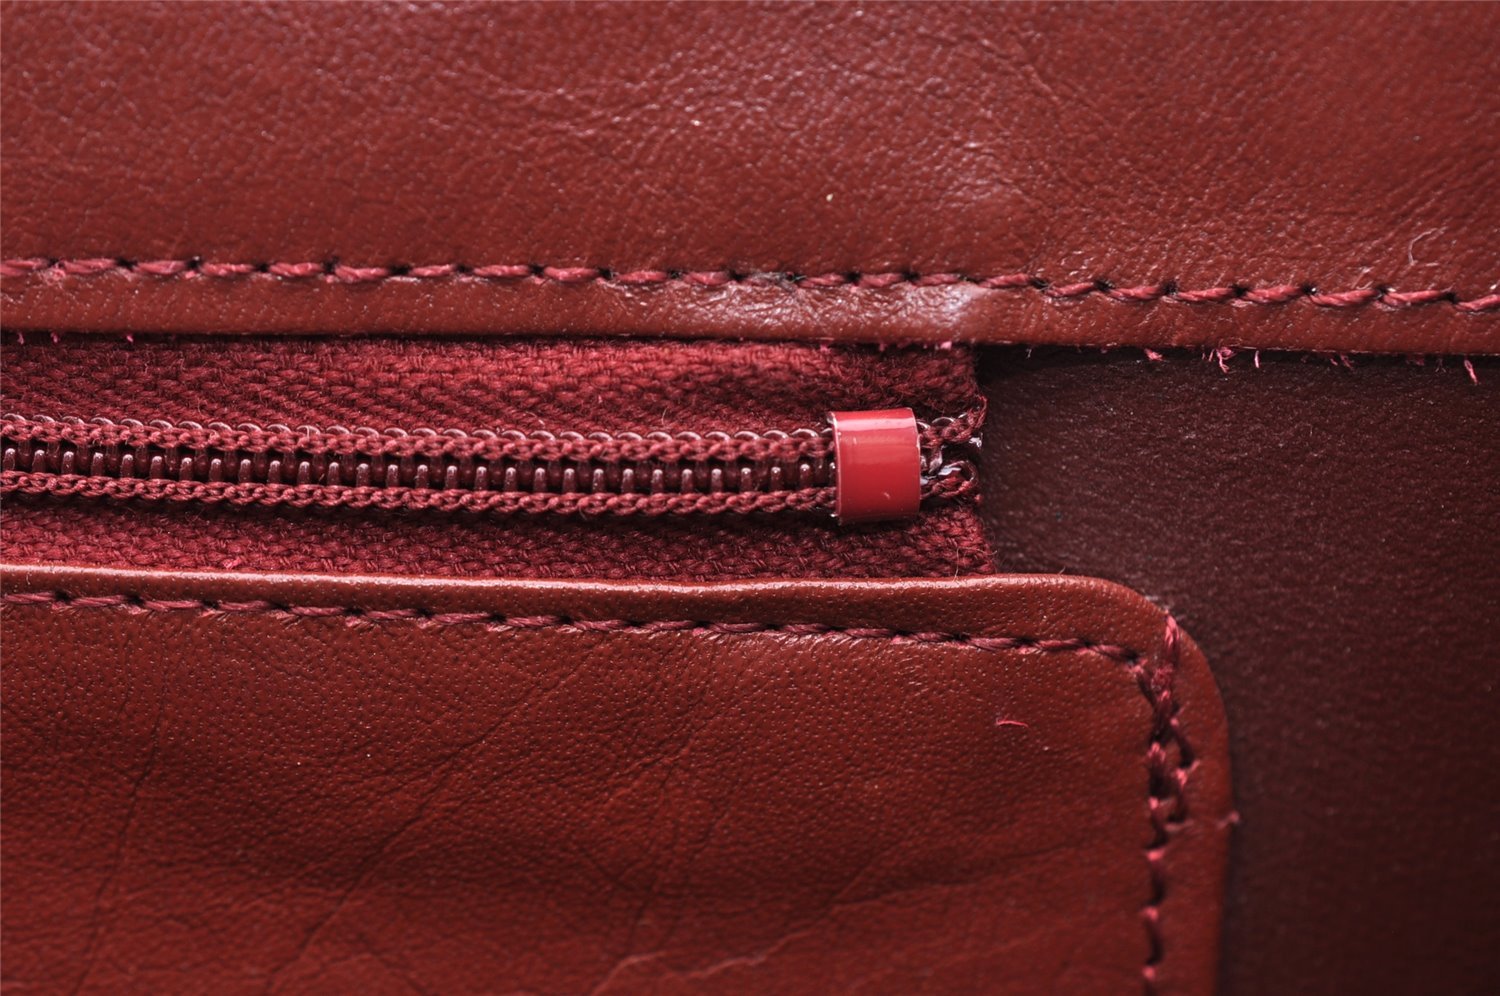 Authentic Cartier Must de Cartier Clutch Hand Bag Leather Bordeaux Red 2917I